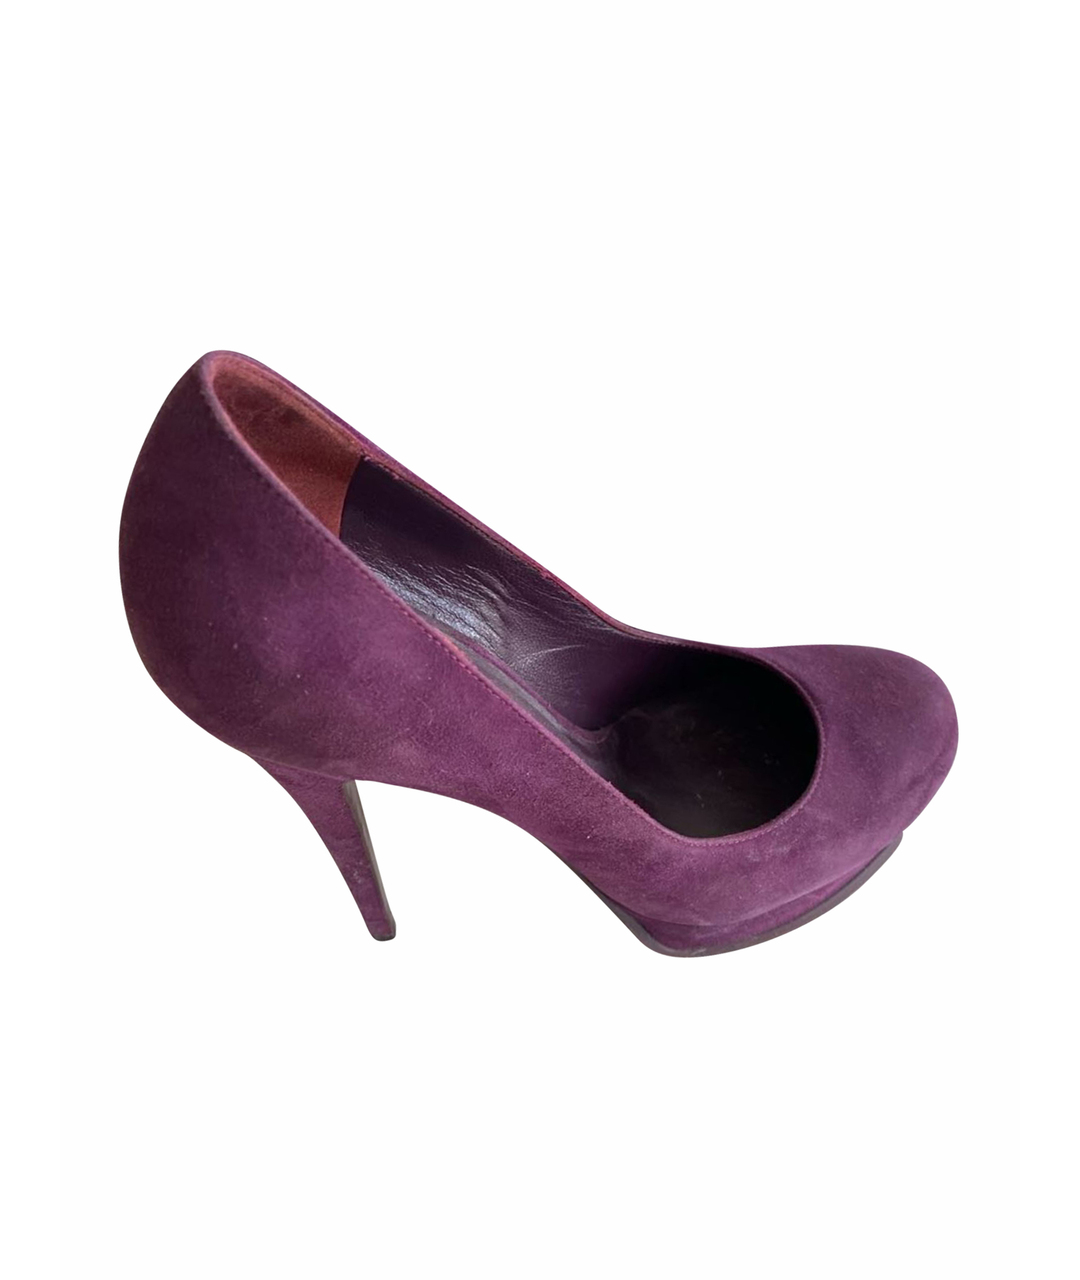 SAINT LAURENT Фиолетовые замшевые туфли, фото 1